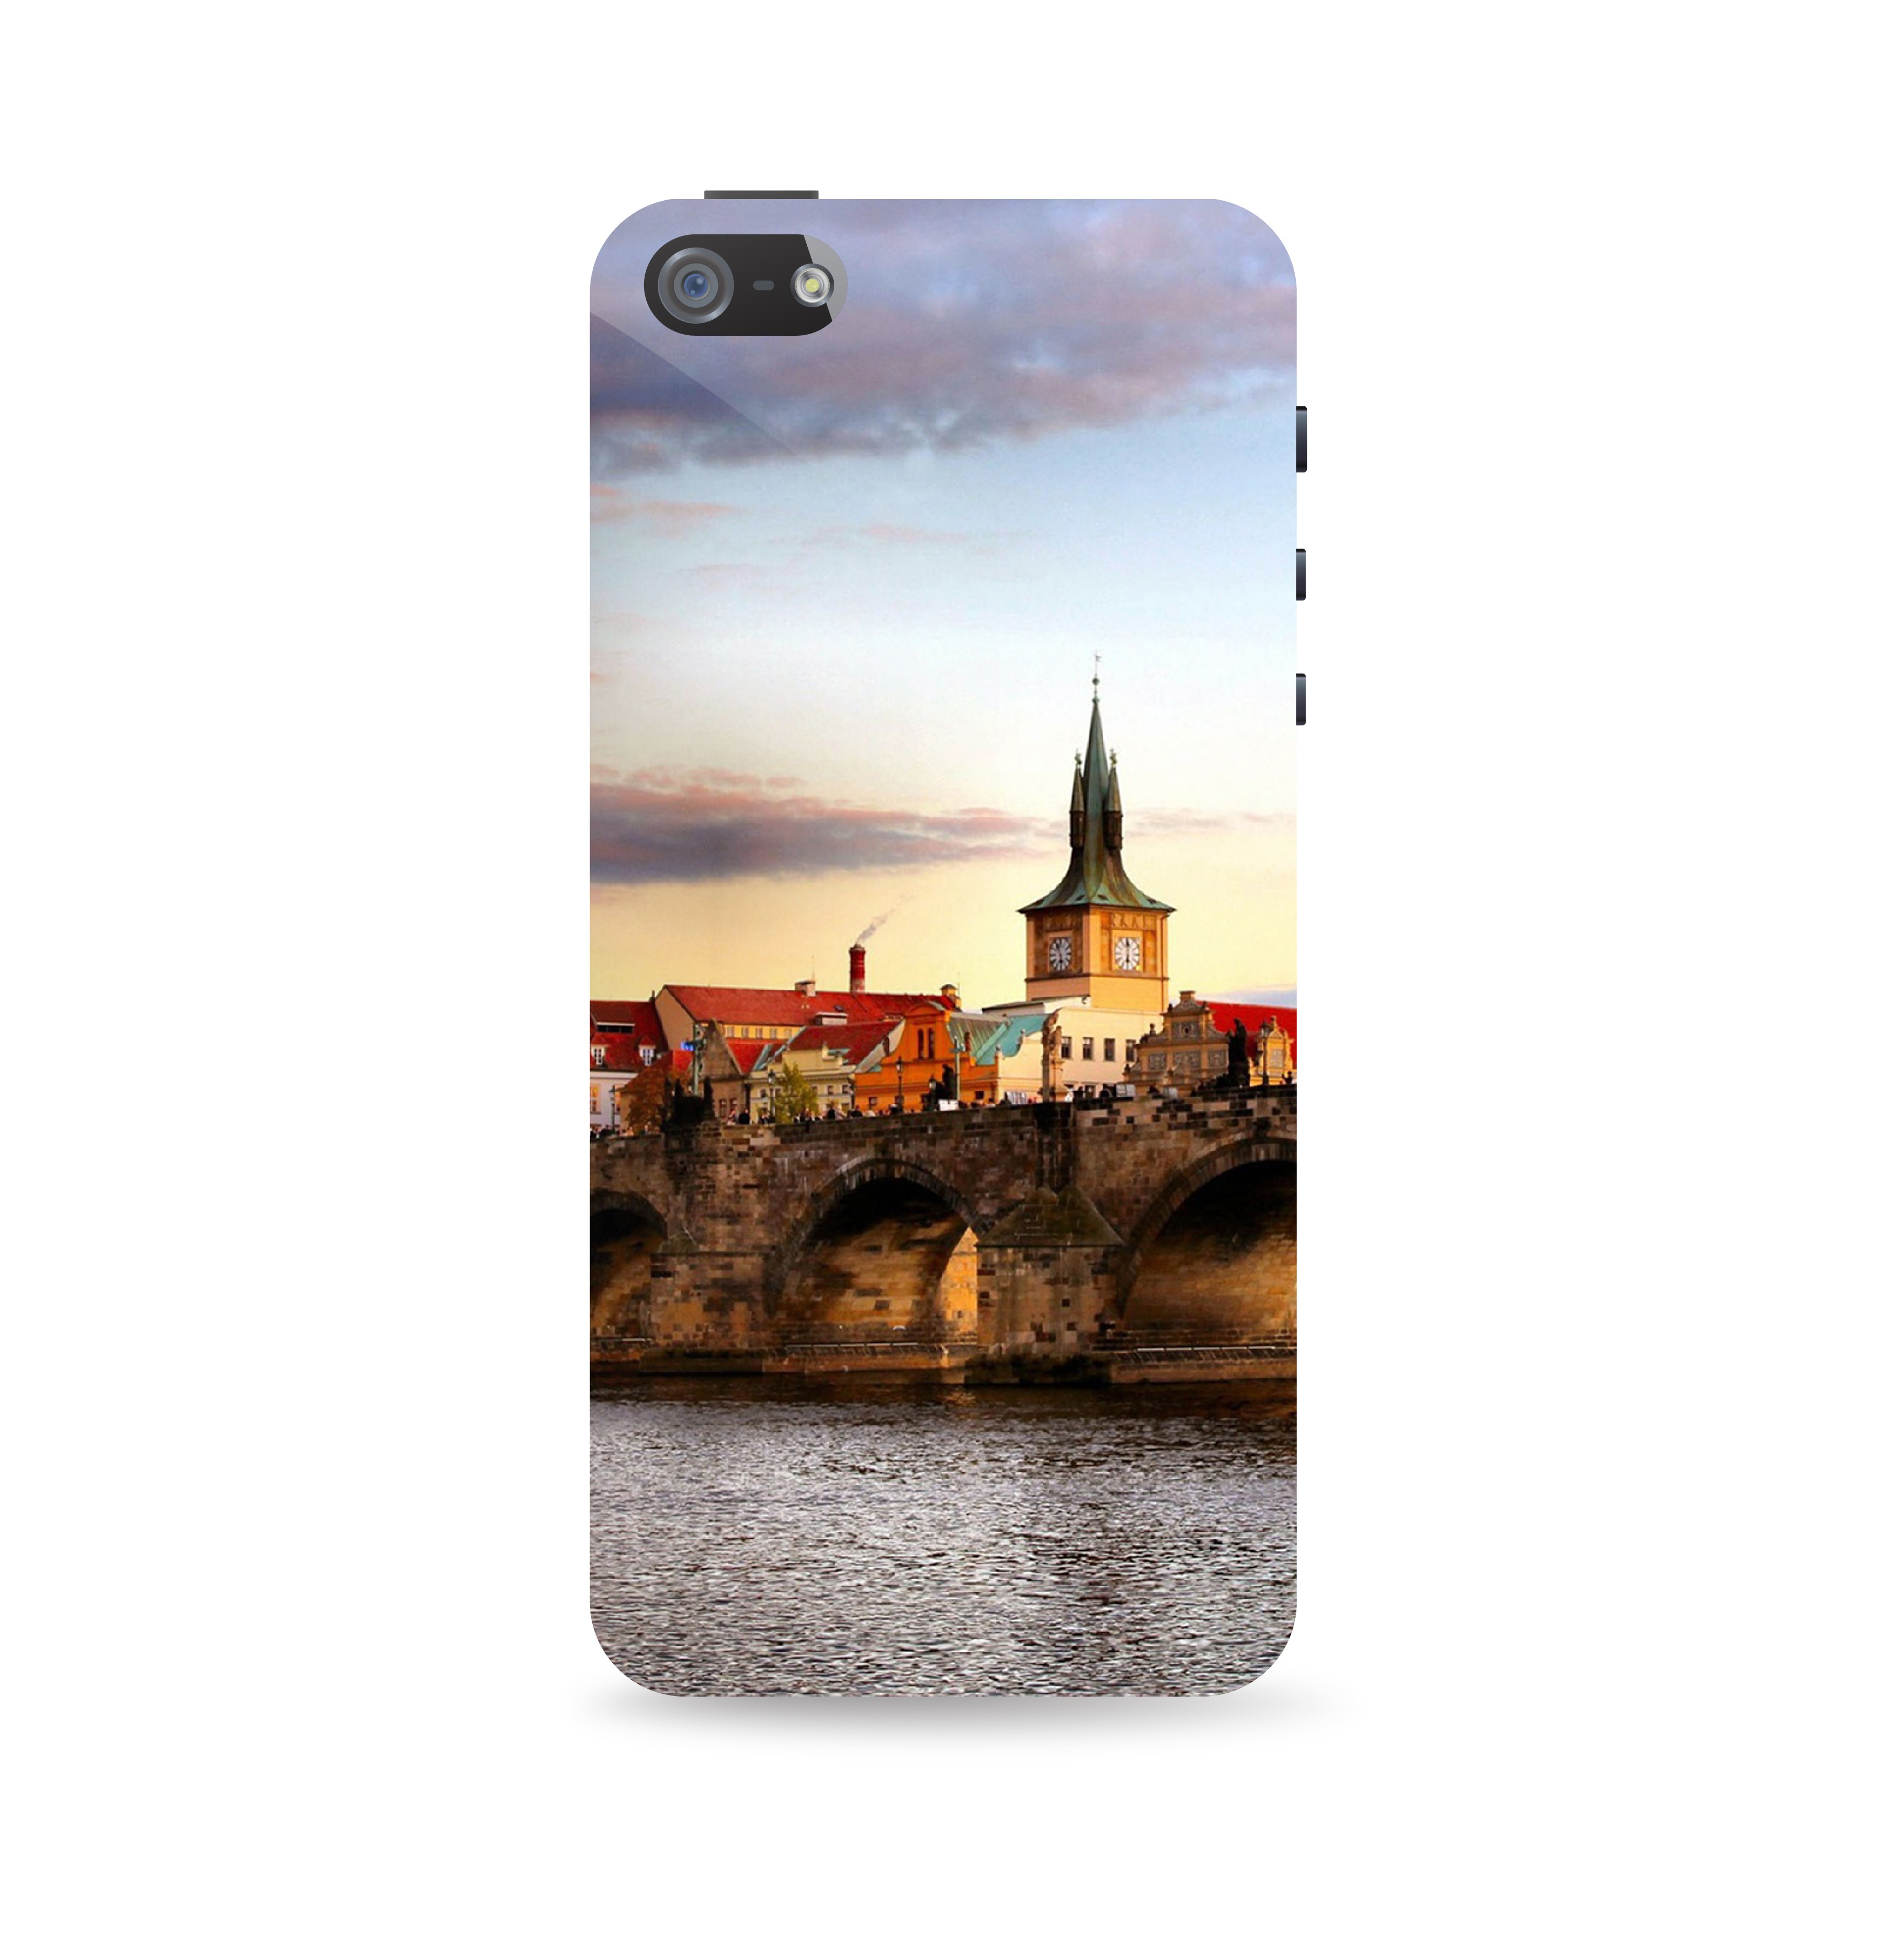 Прага iPhone 5